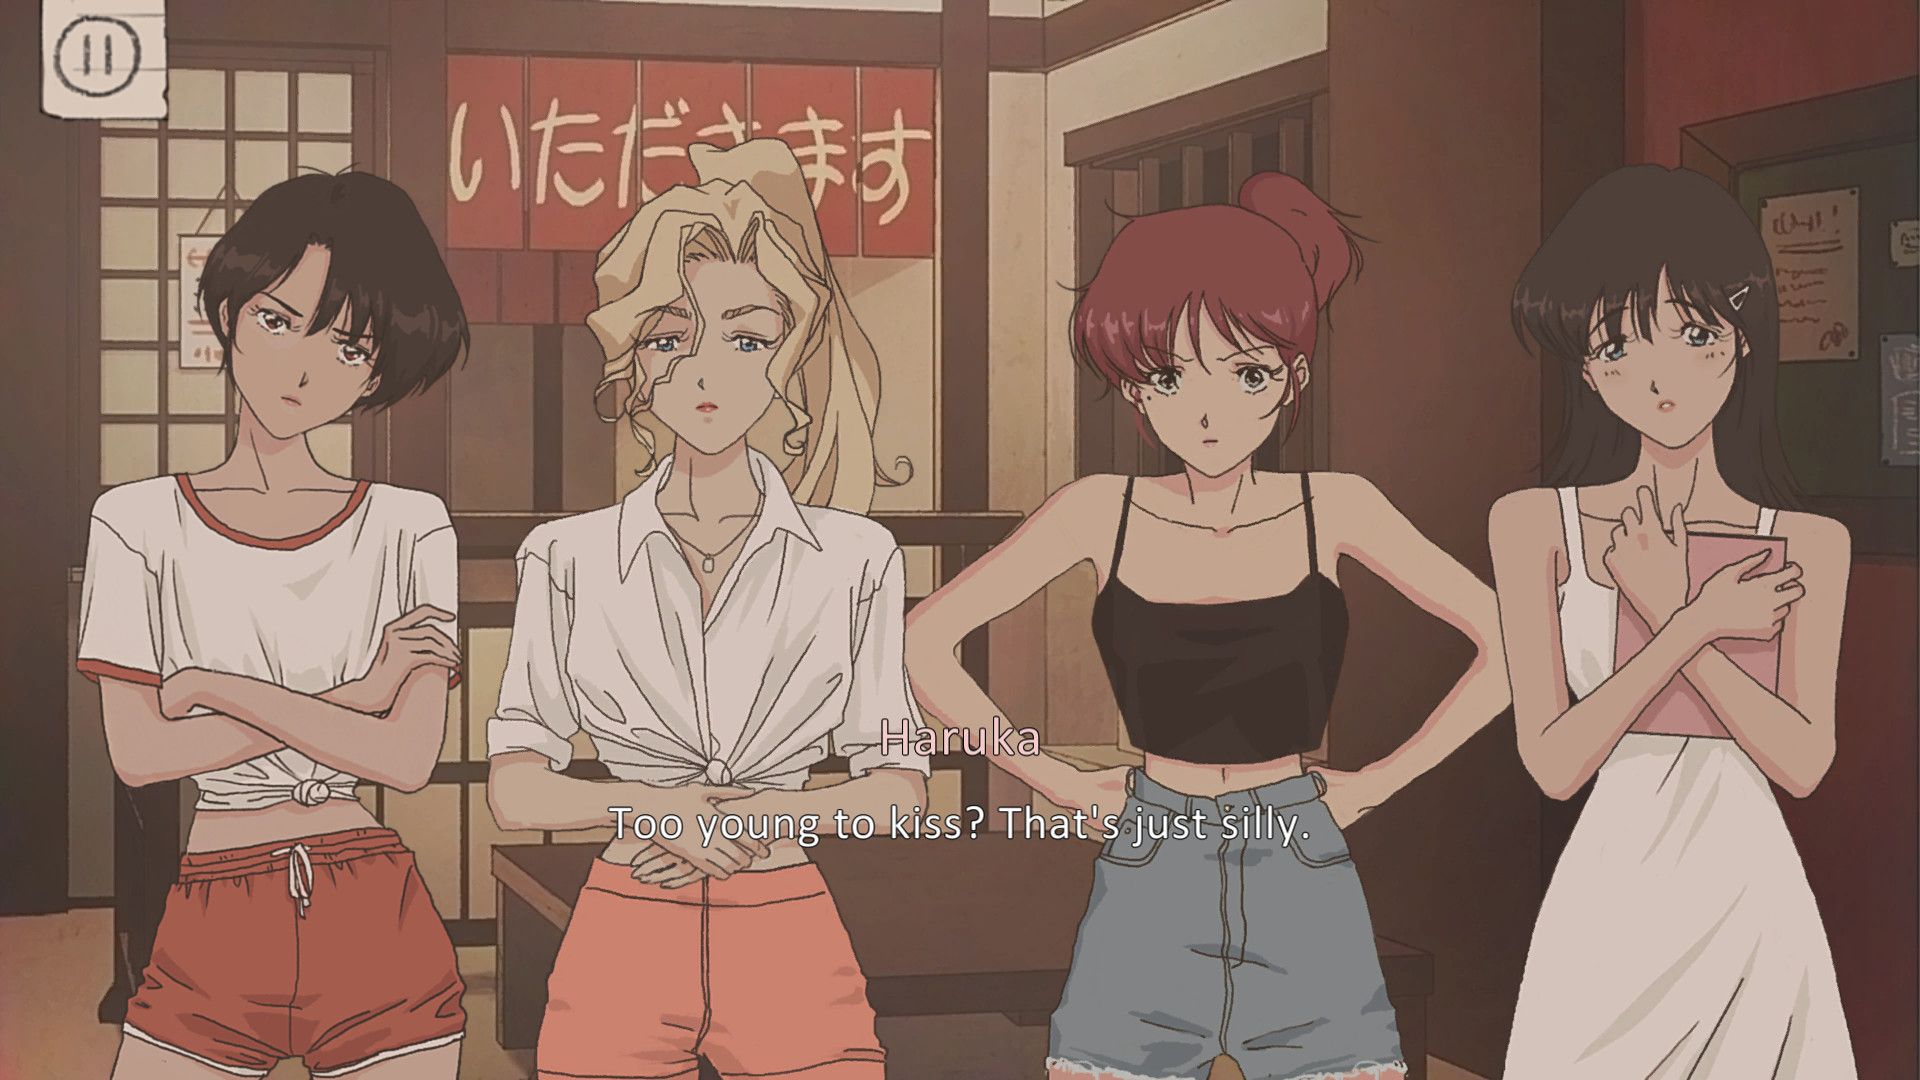 The girls of anime and manga - 90s anime